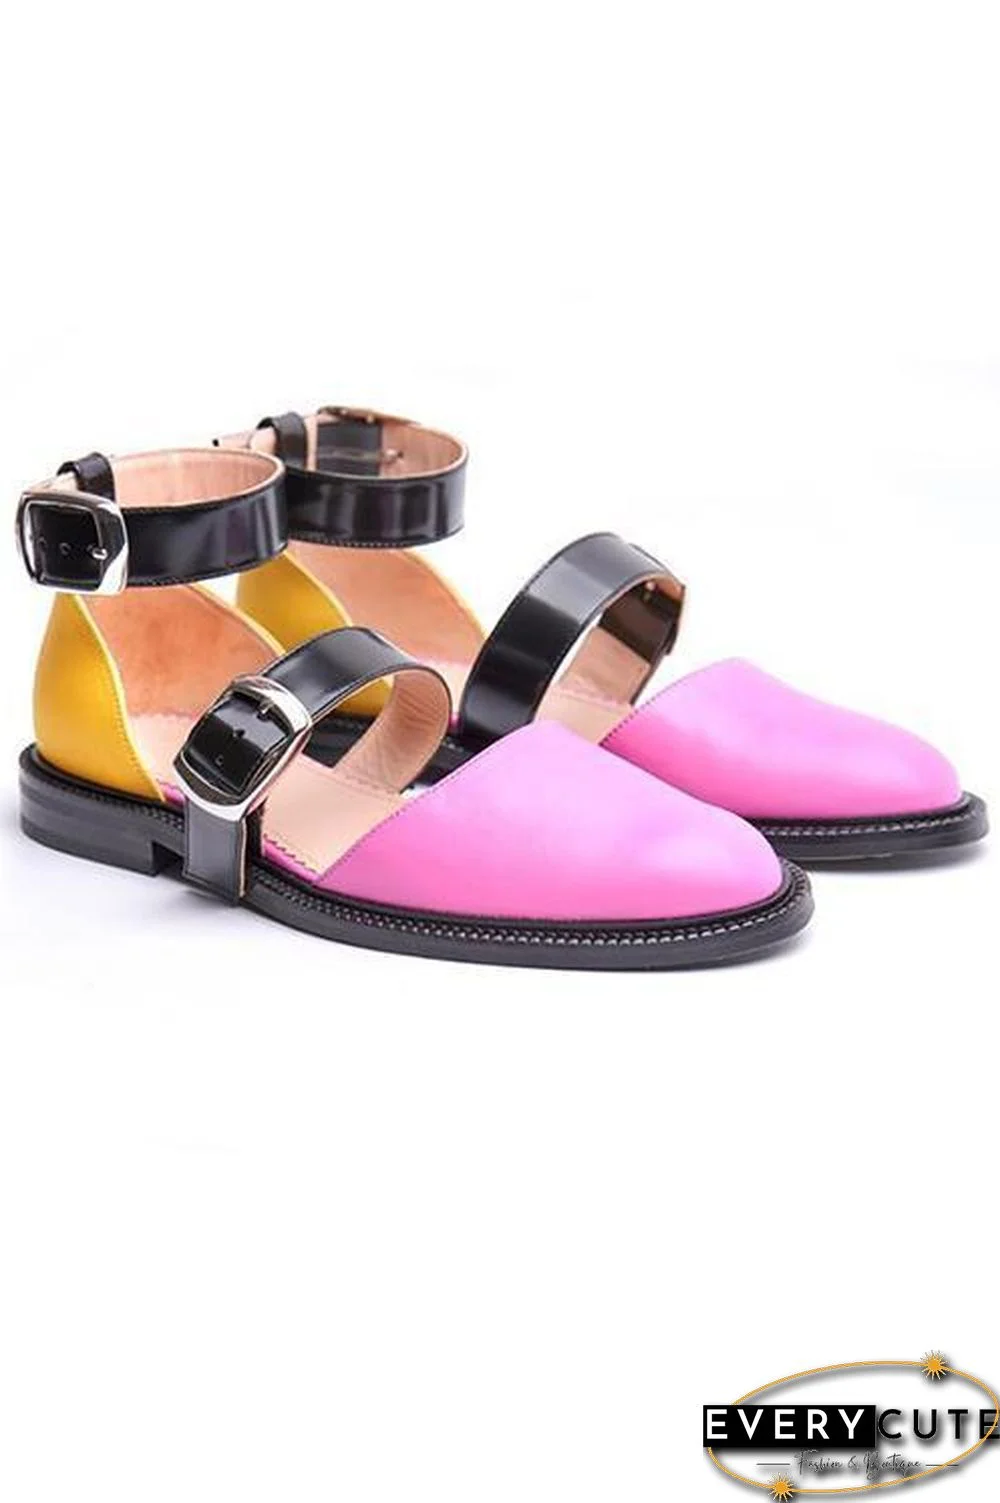 Buckle Color Block Sandals Flats